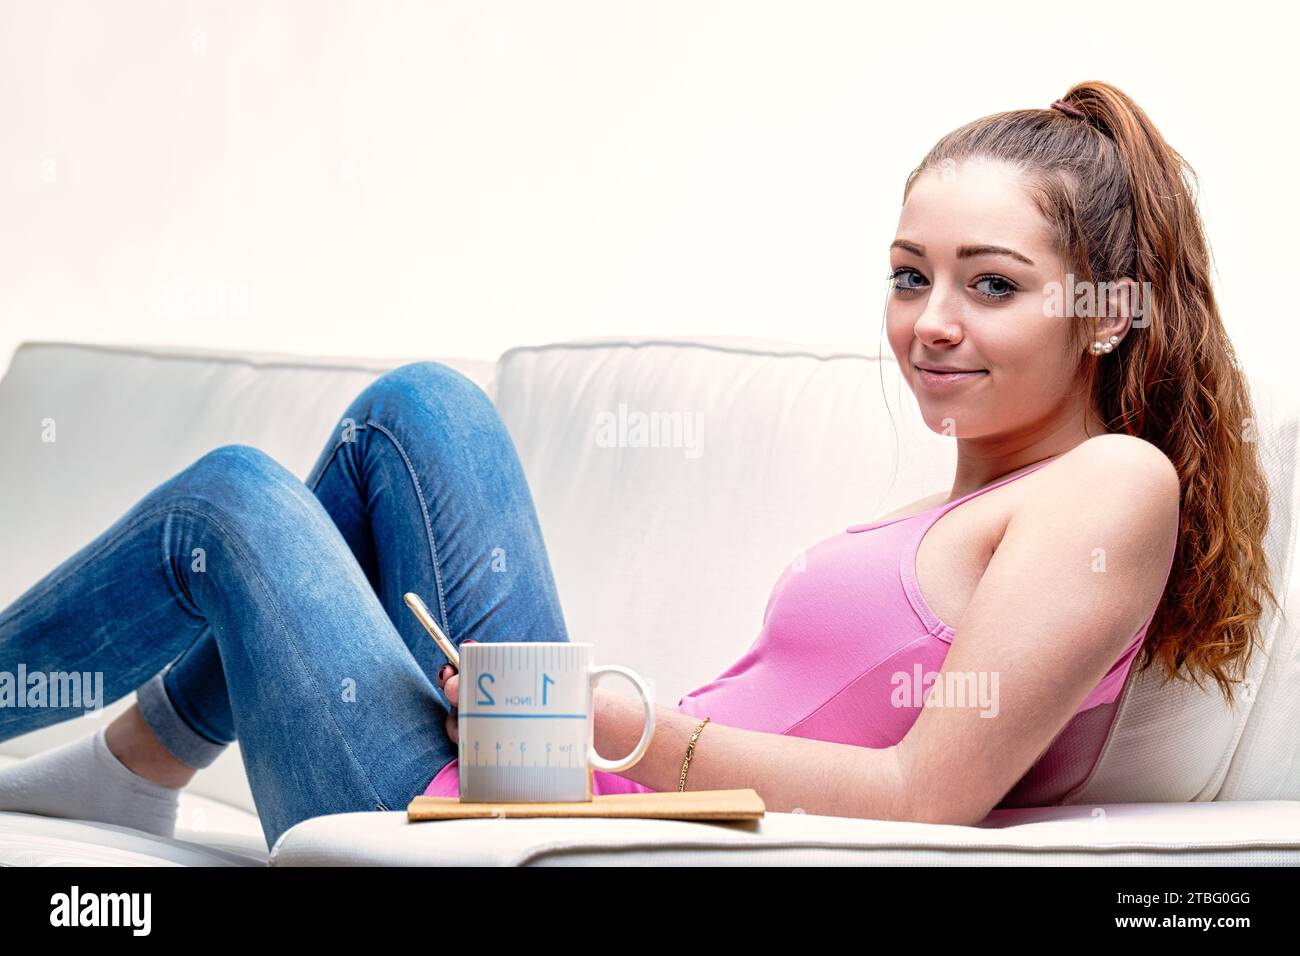 La posa casual della donna sul divano, i jeans blu abbinati a un top rosa, racchiudono una perfetta giornata di relax Foto Stock